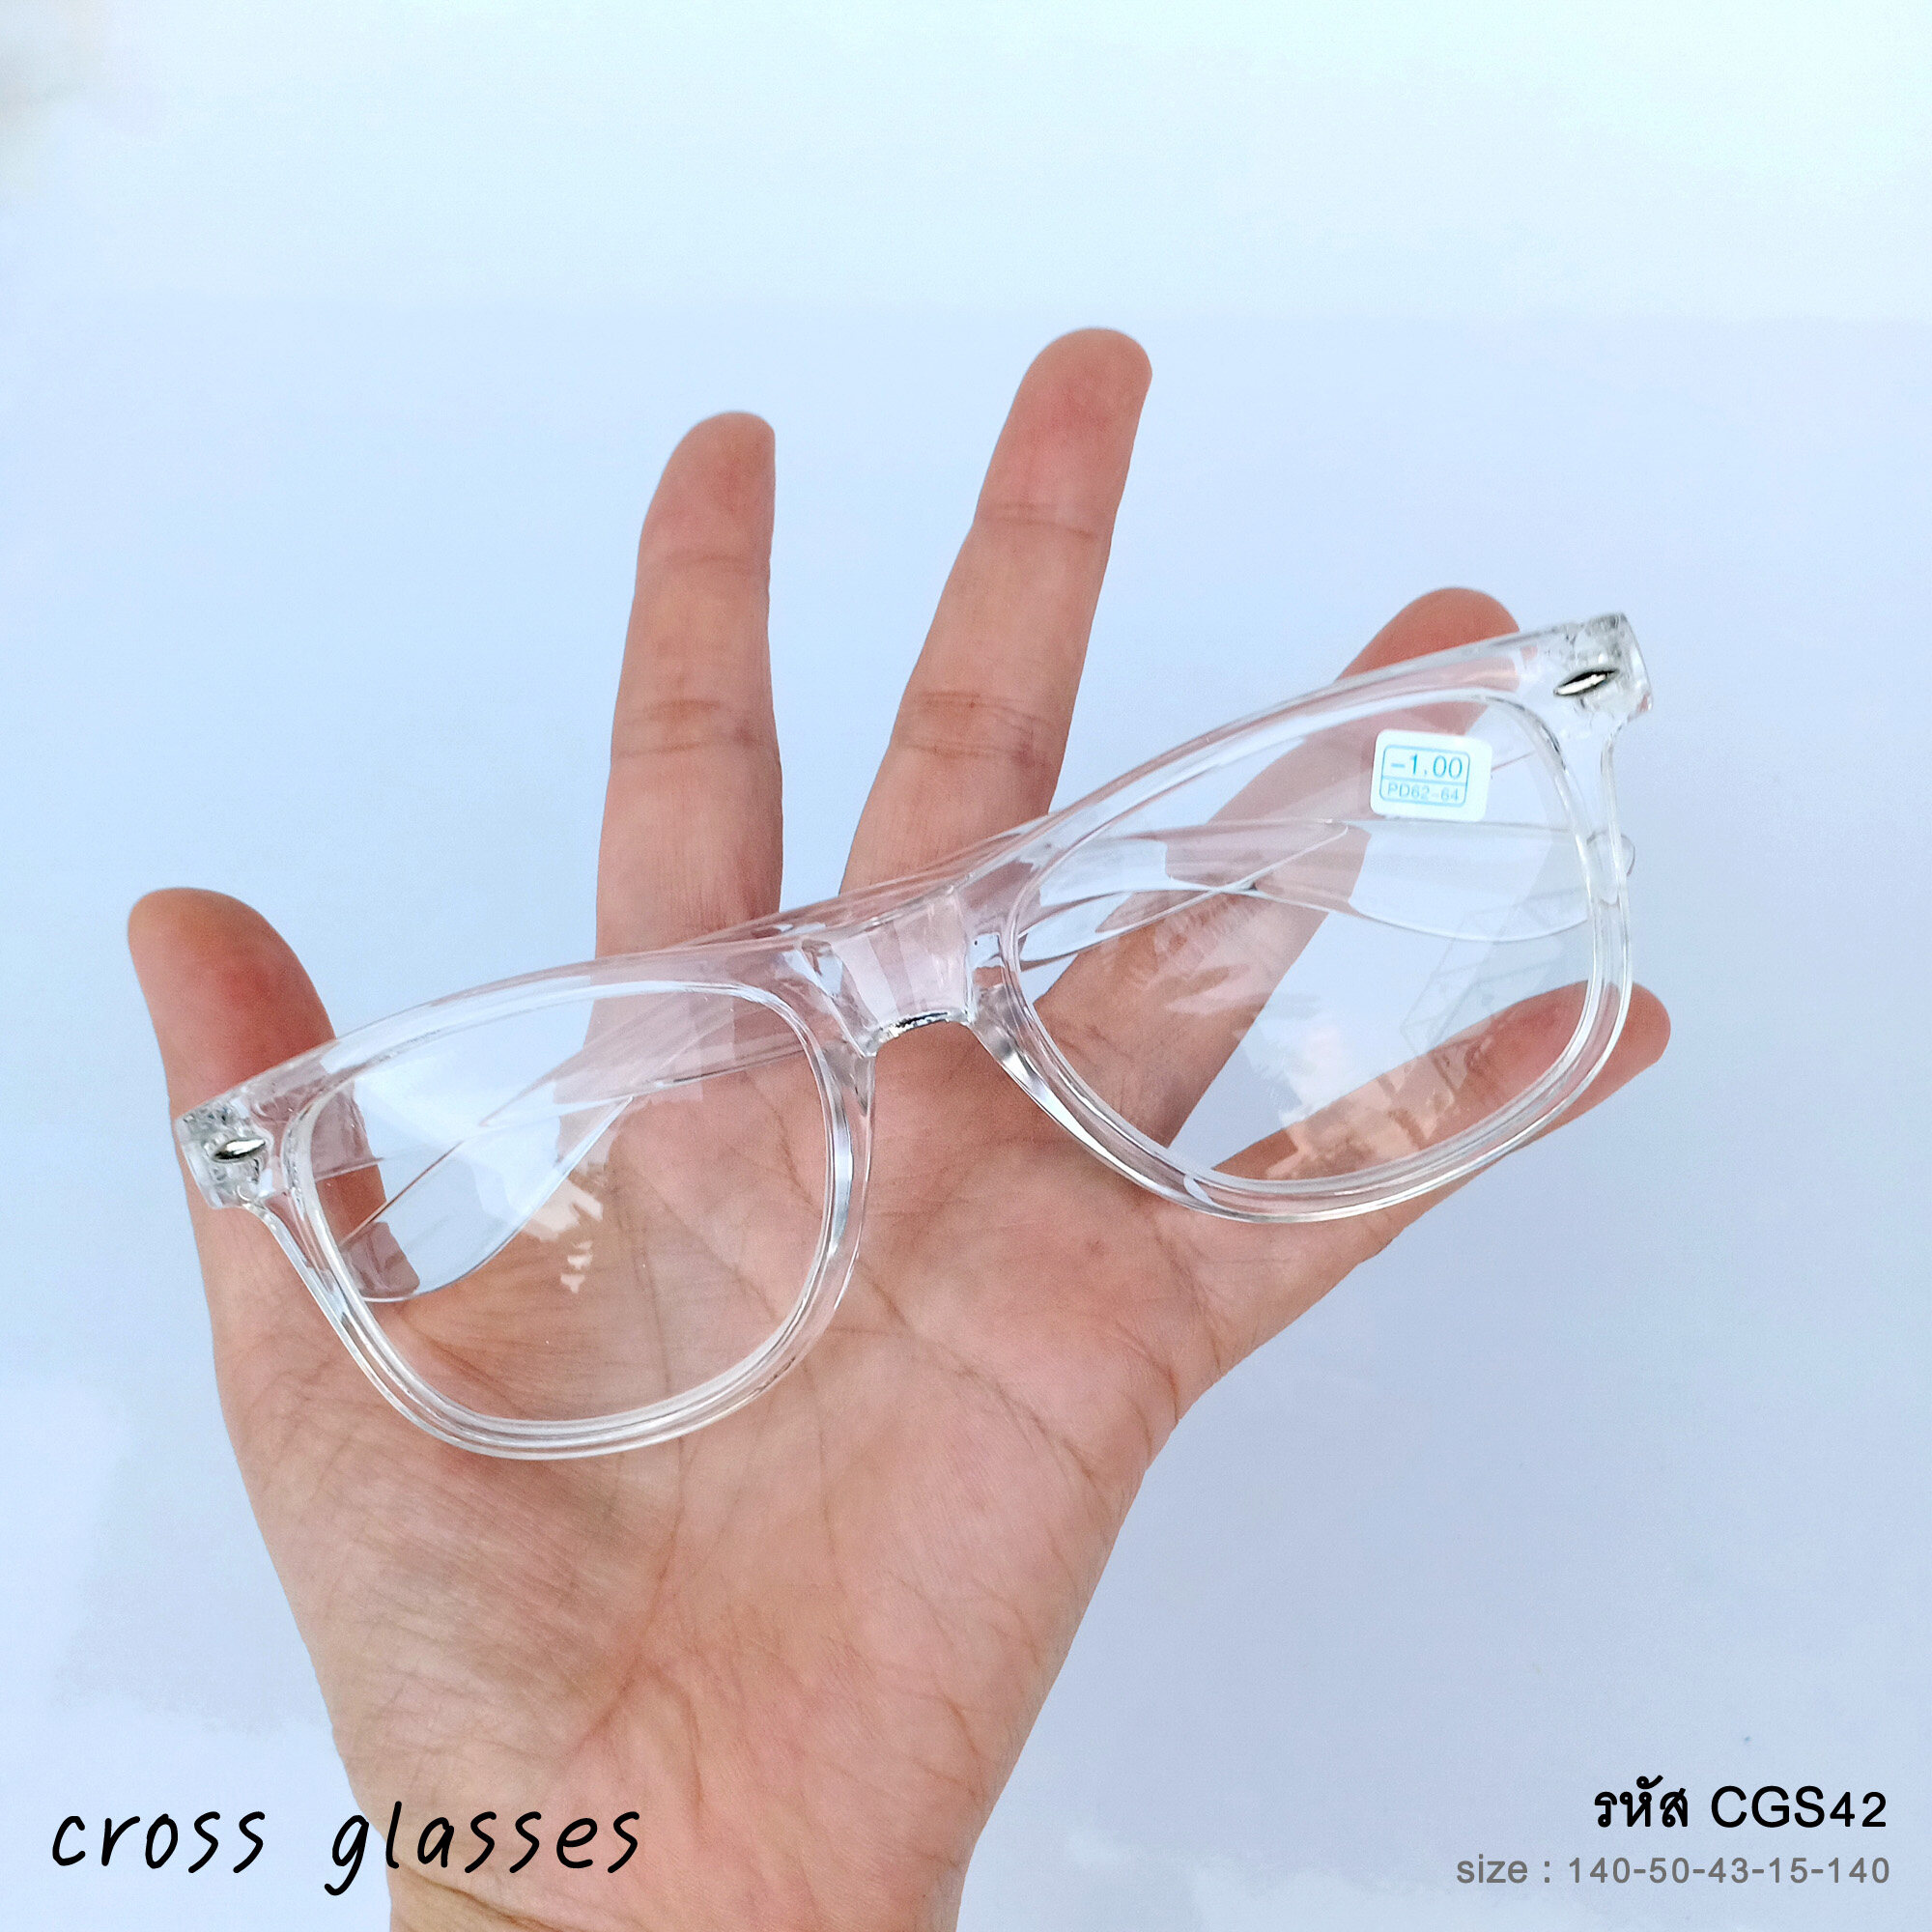 แว่นสายตาสั้น -1.00 ถึง -6.00 กรอบใส CGS42 แถมฟรีกล่องแว่นพกพา+ผ้าเช็ดเลนส์